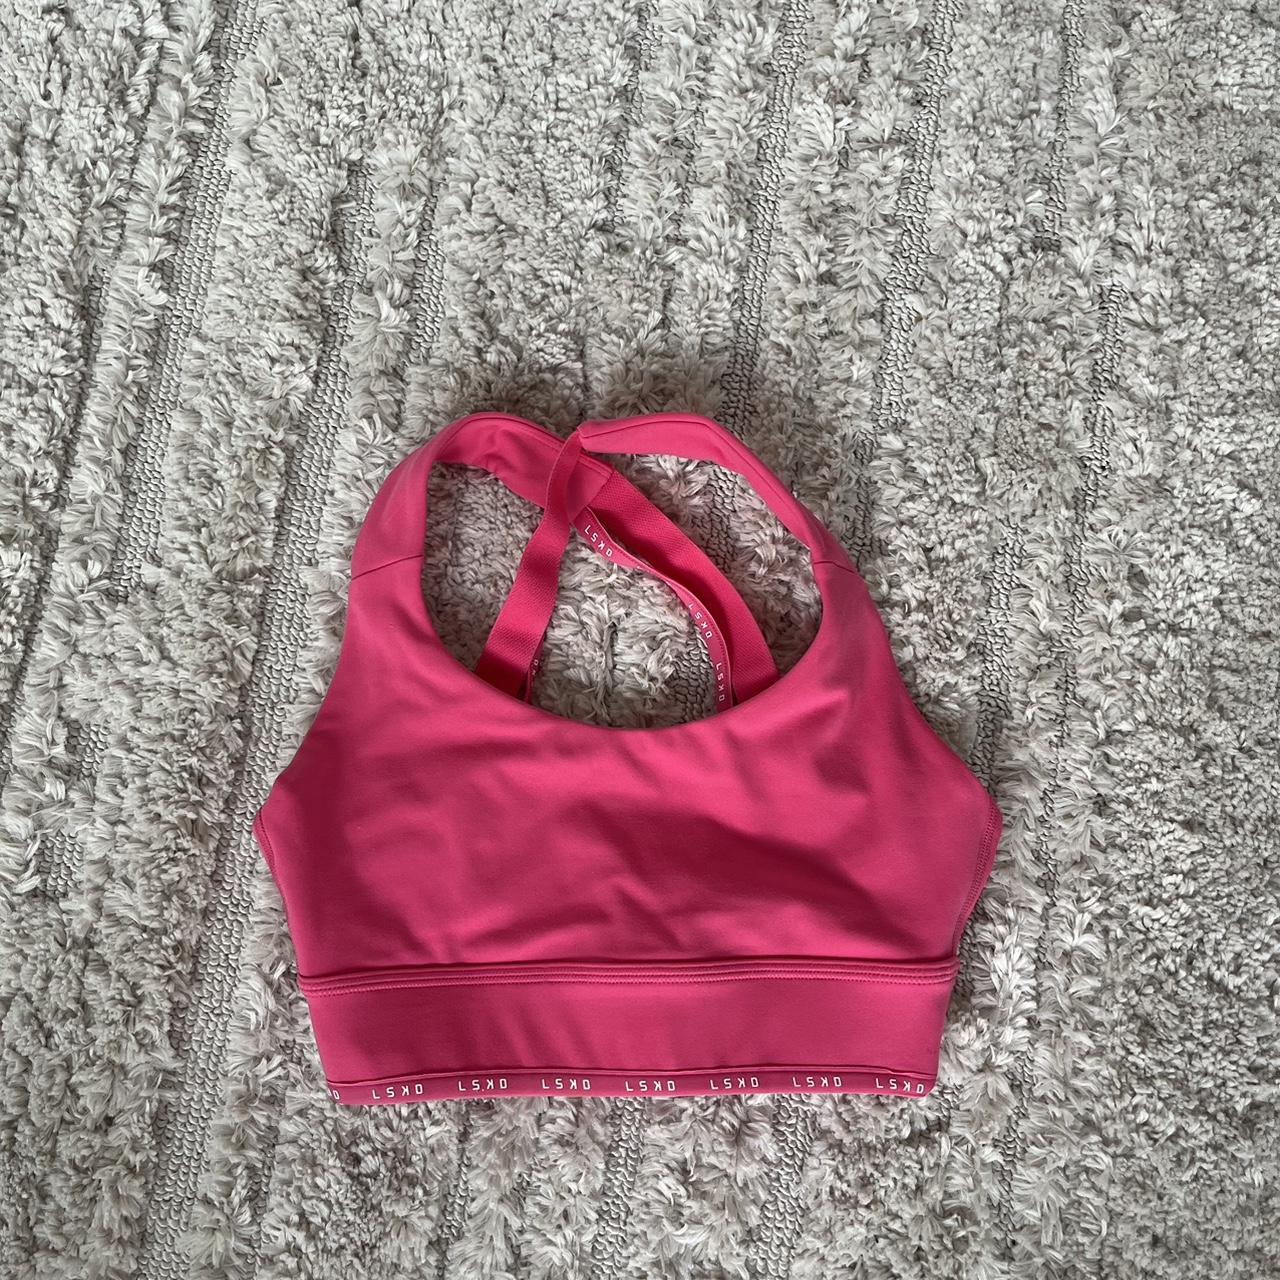 LSKD pink sports bra size XXS never been worn too - Depop